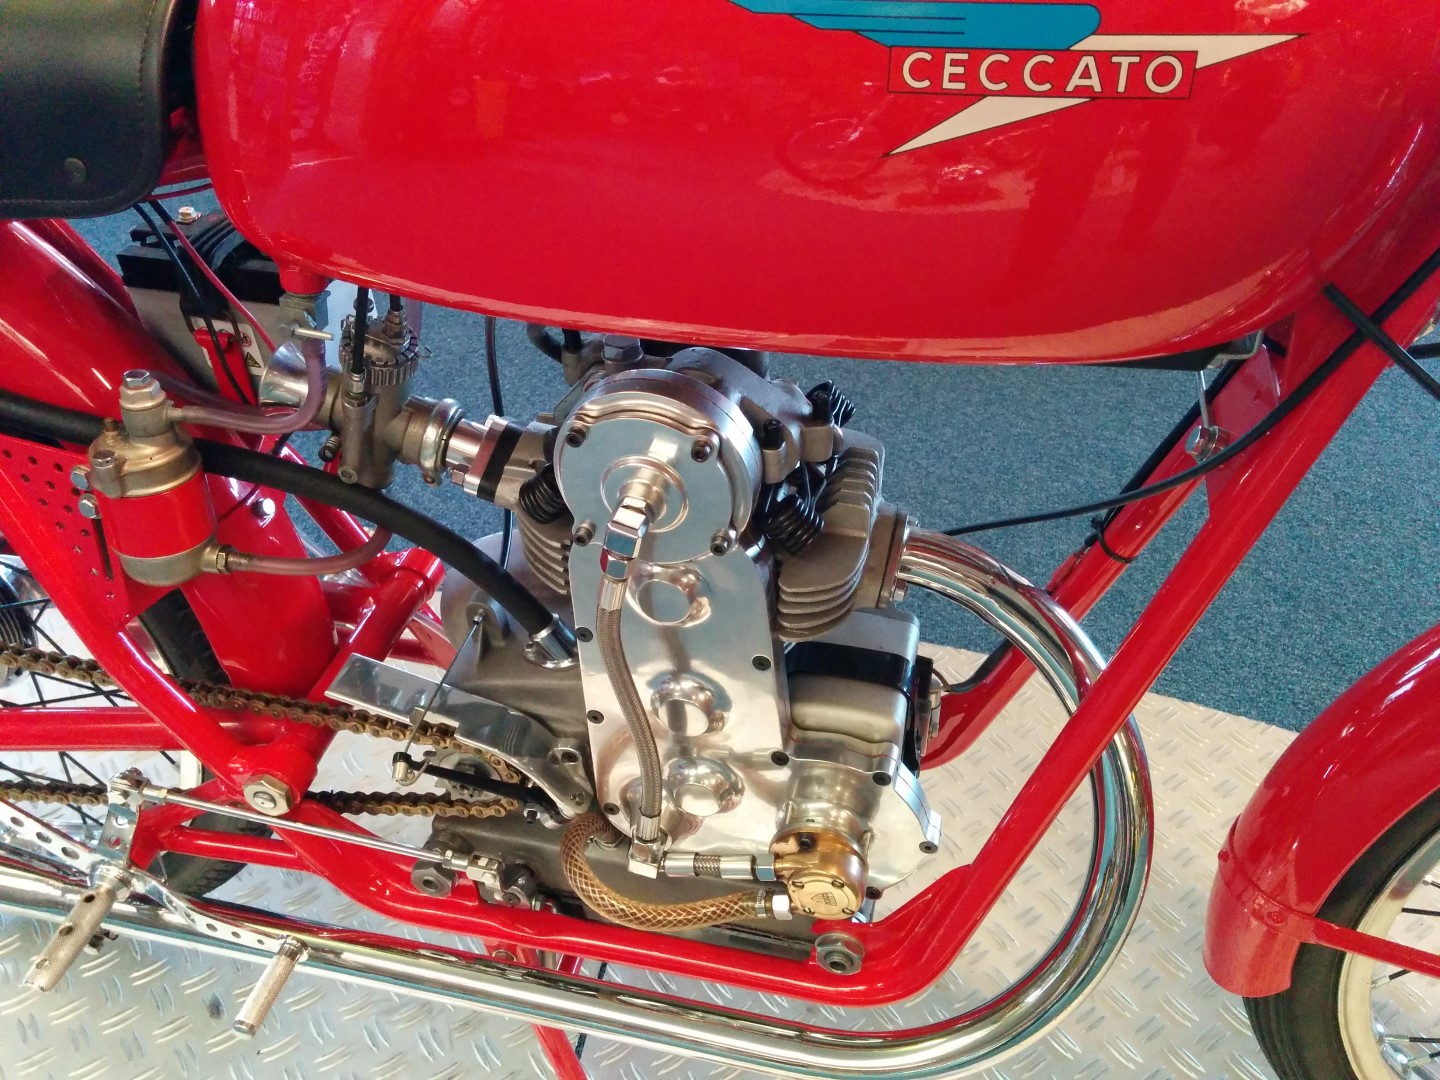 Prachtige details van de Ceccato motor